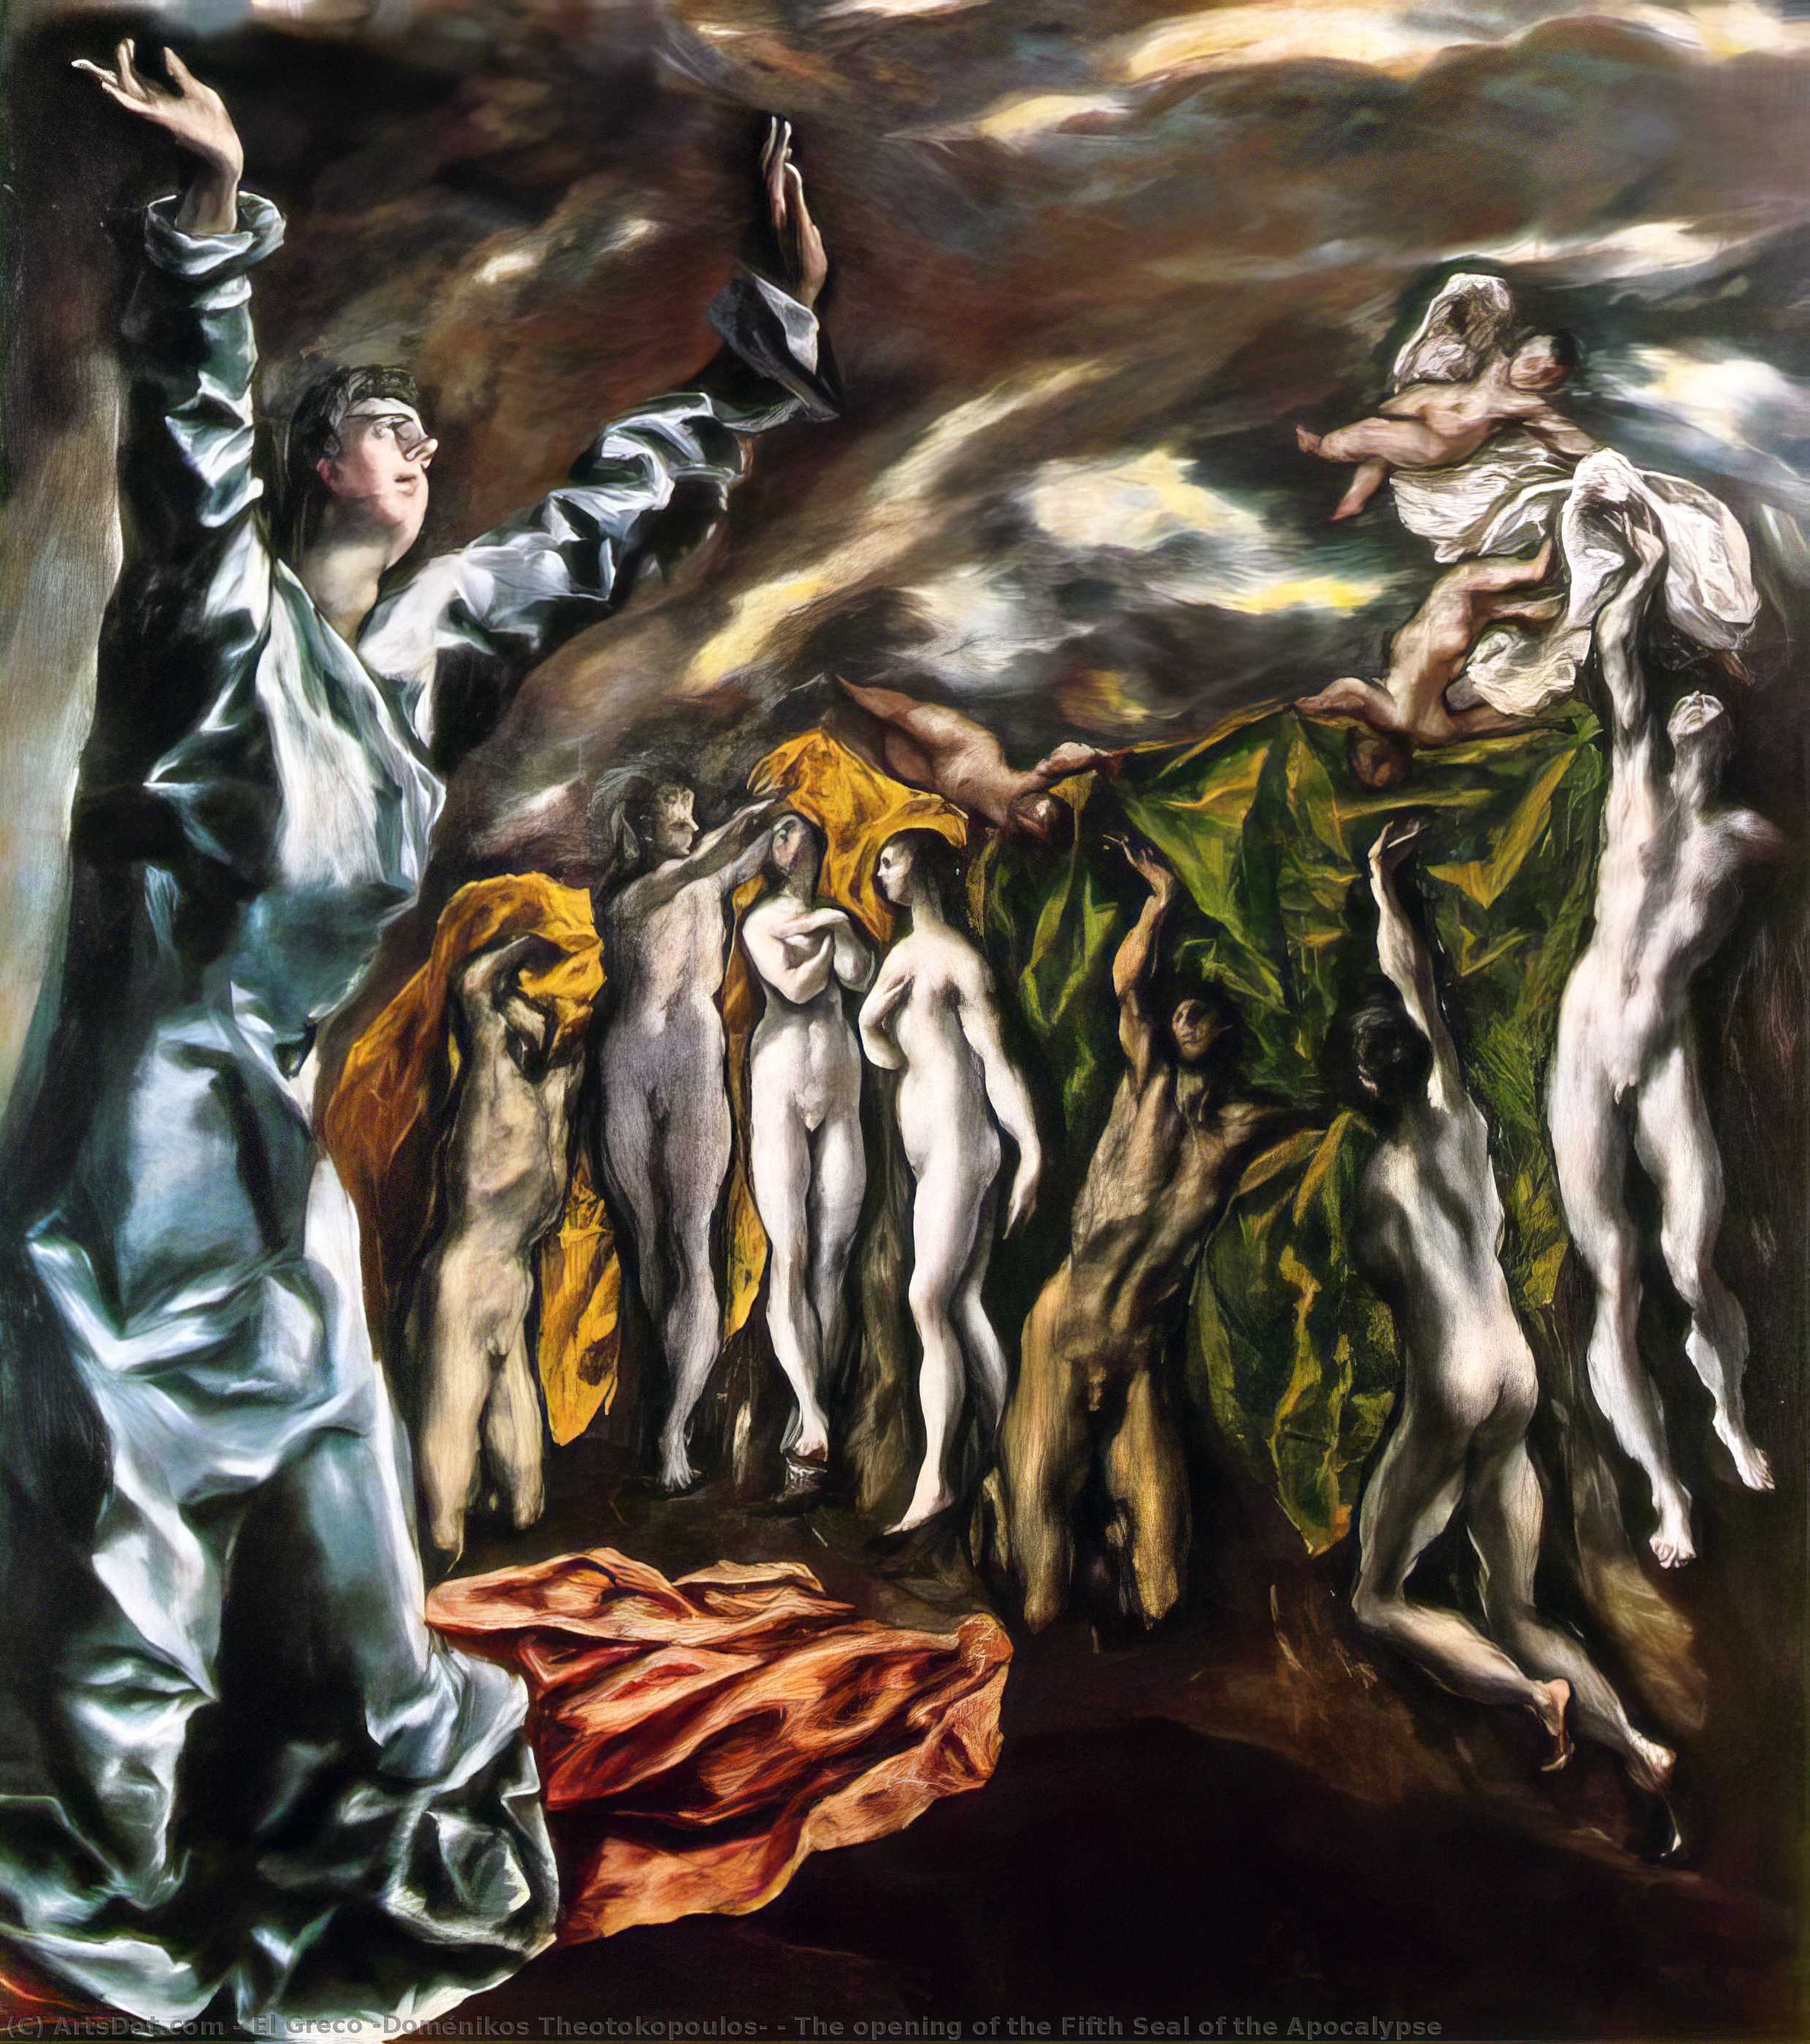 Wikioo.org - Die Enzyklopädie bildender Kunst - Malerei, Kunstwerk von El Greco (Doménikos Theotokopoulos) - die eröffnung des fünften siegels der apokalypse